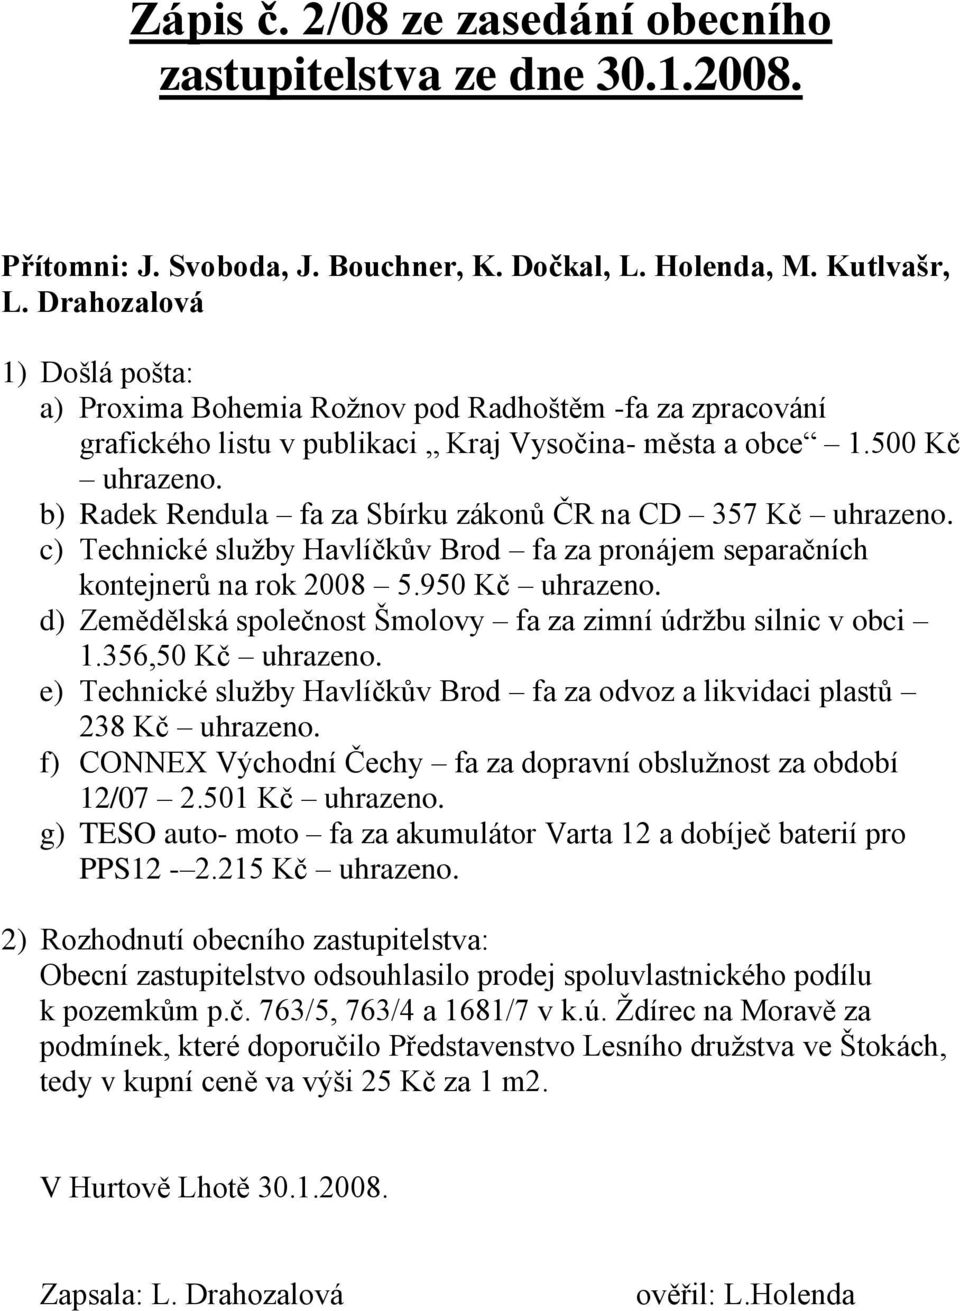 b) Radek Rendula fa za Sbírku zákonů ČR na CD 357 Kč uhrazeno. c) Technické sluţby Havlíčkův Brod fa za pronájem separačních kontejnerů na rok 2008 5.950 Kč uhrazeno.